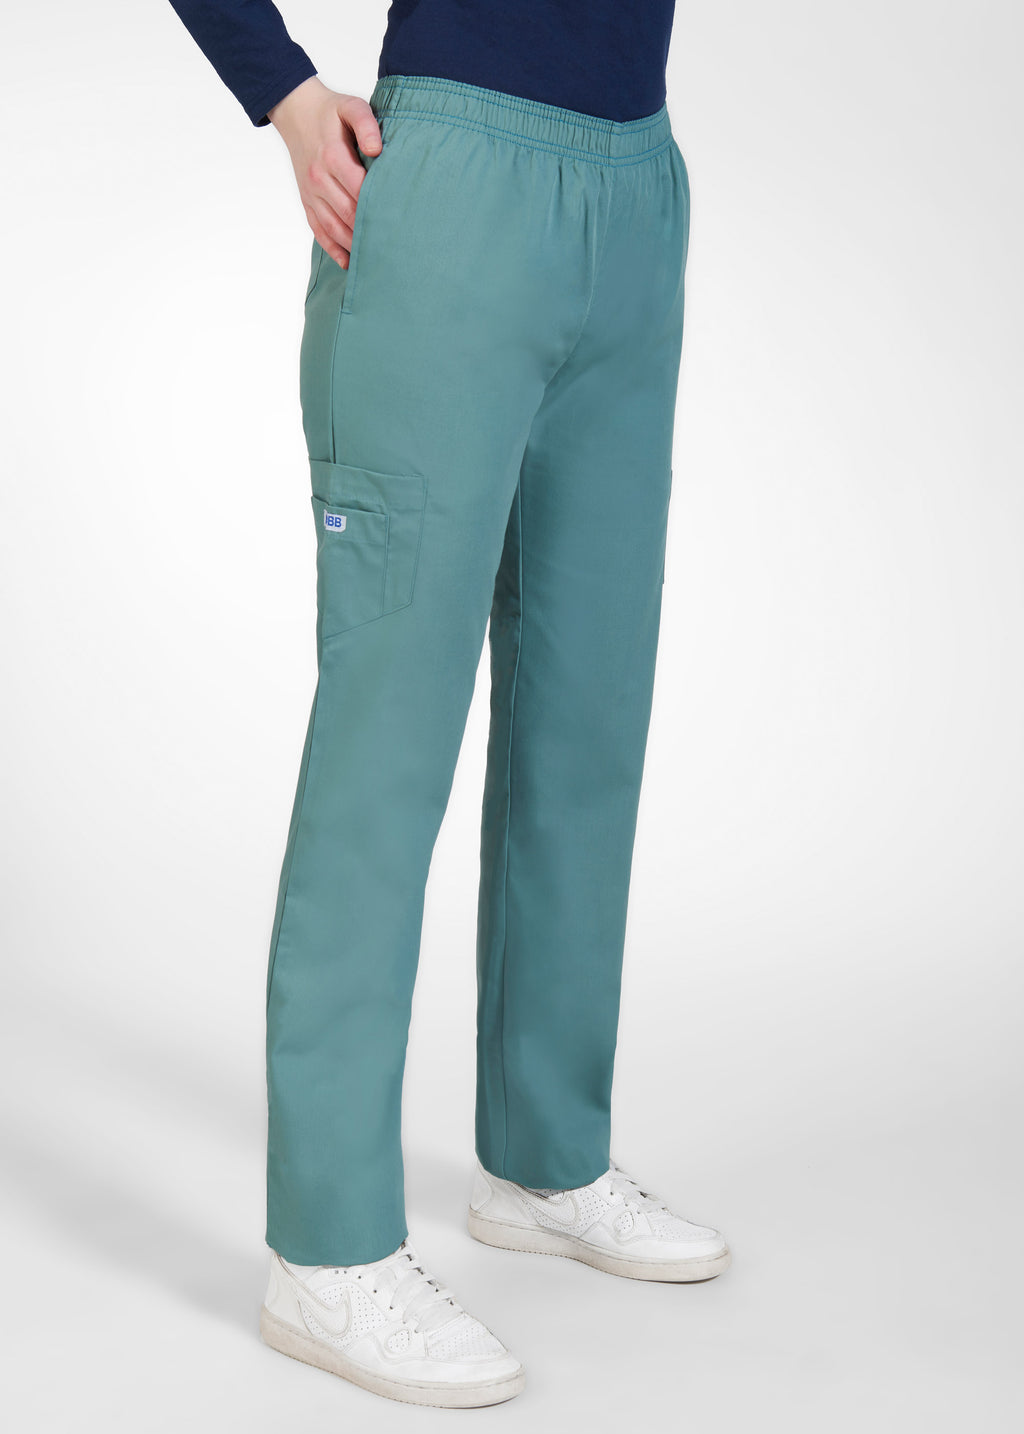 MOBB Unisex Six Pocket Cargo Pant - Tall – Dixie Uniforms Ltd.